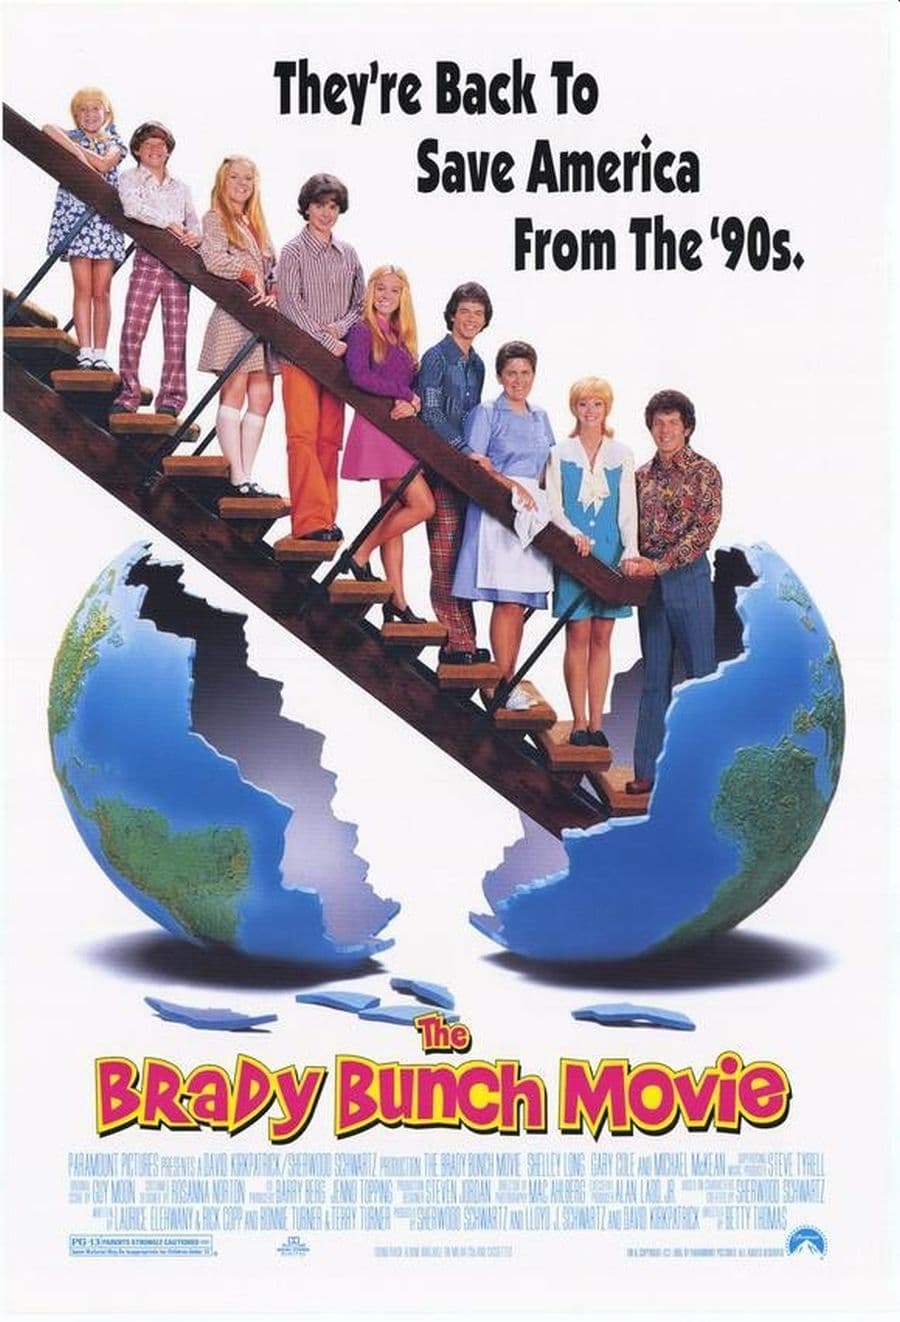 The Brady Bunch Movie Movie poster